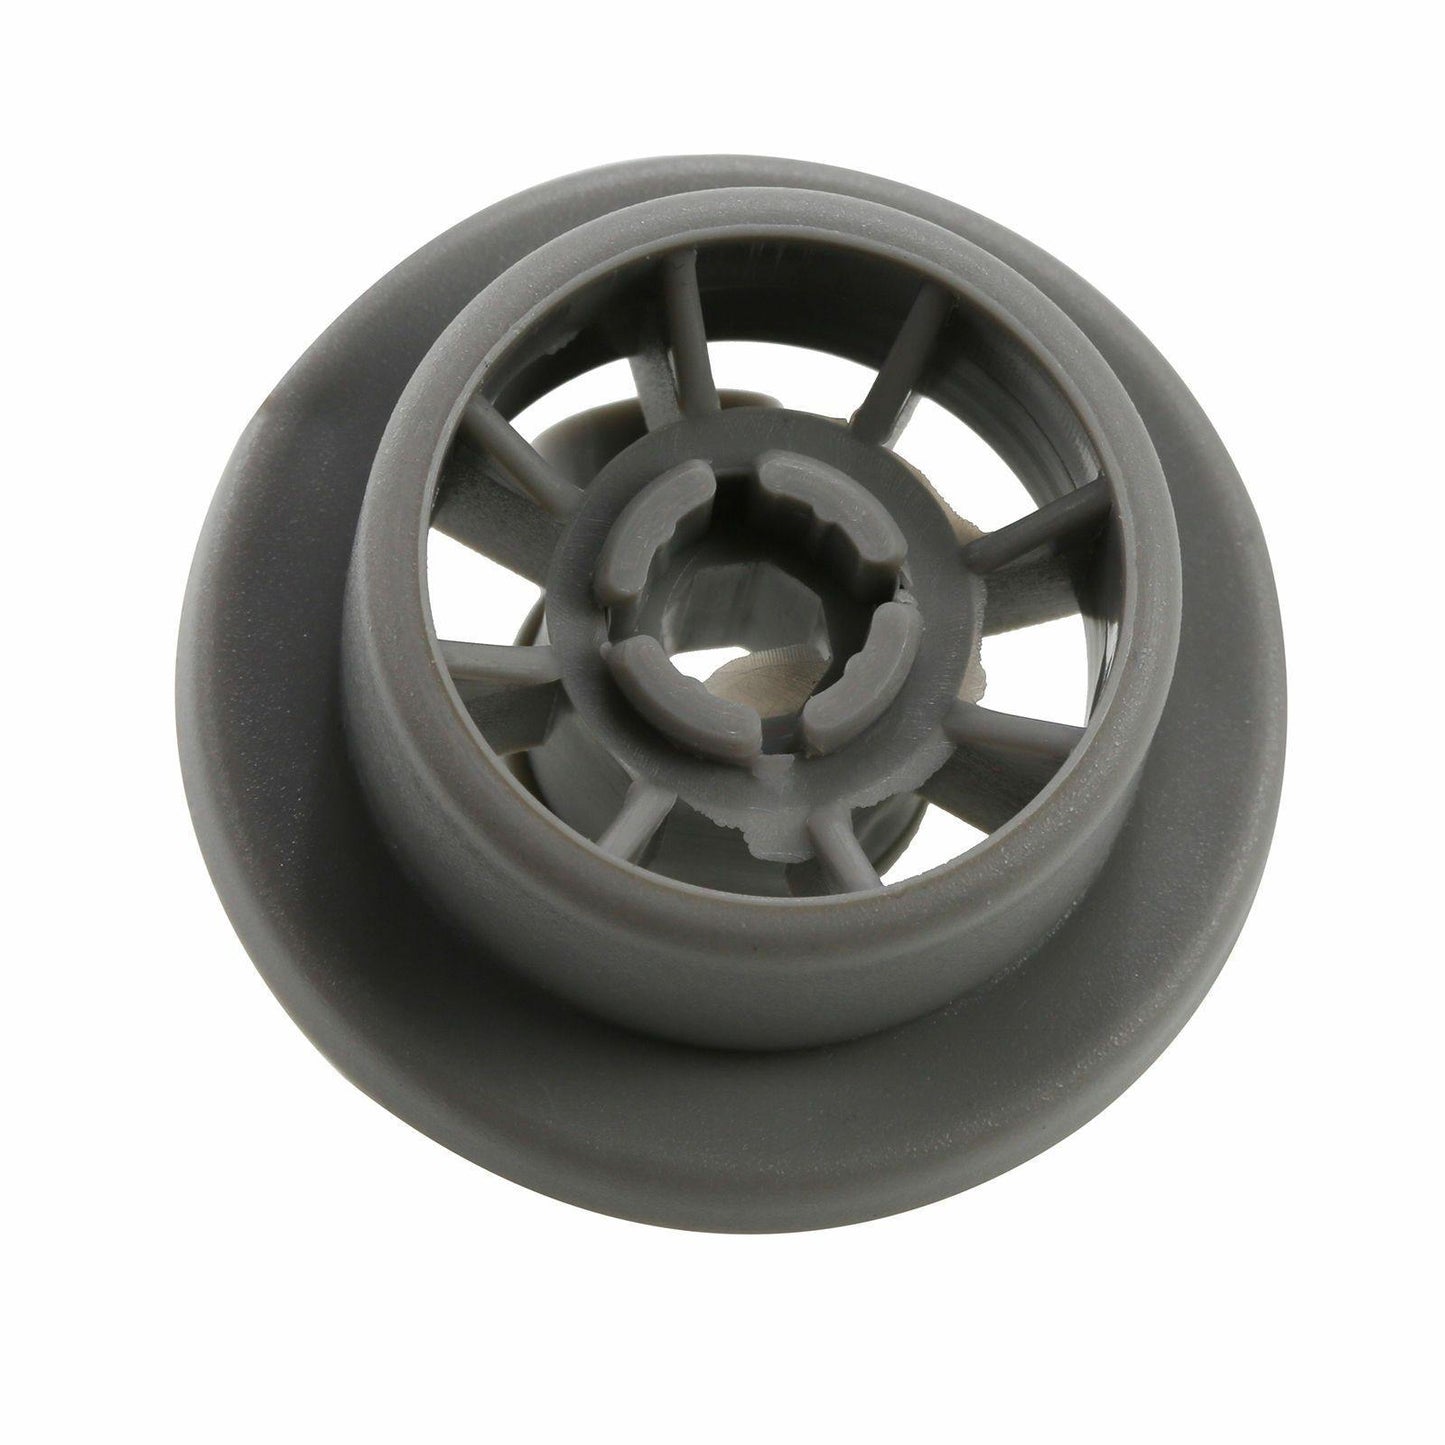 4X Diswasher Lower Bottom Bakset Wheel 165314 For Bosch Neff & Siemens Rollers Sparesbarn